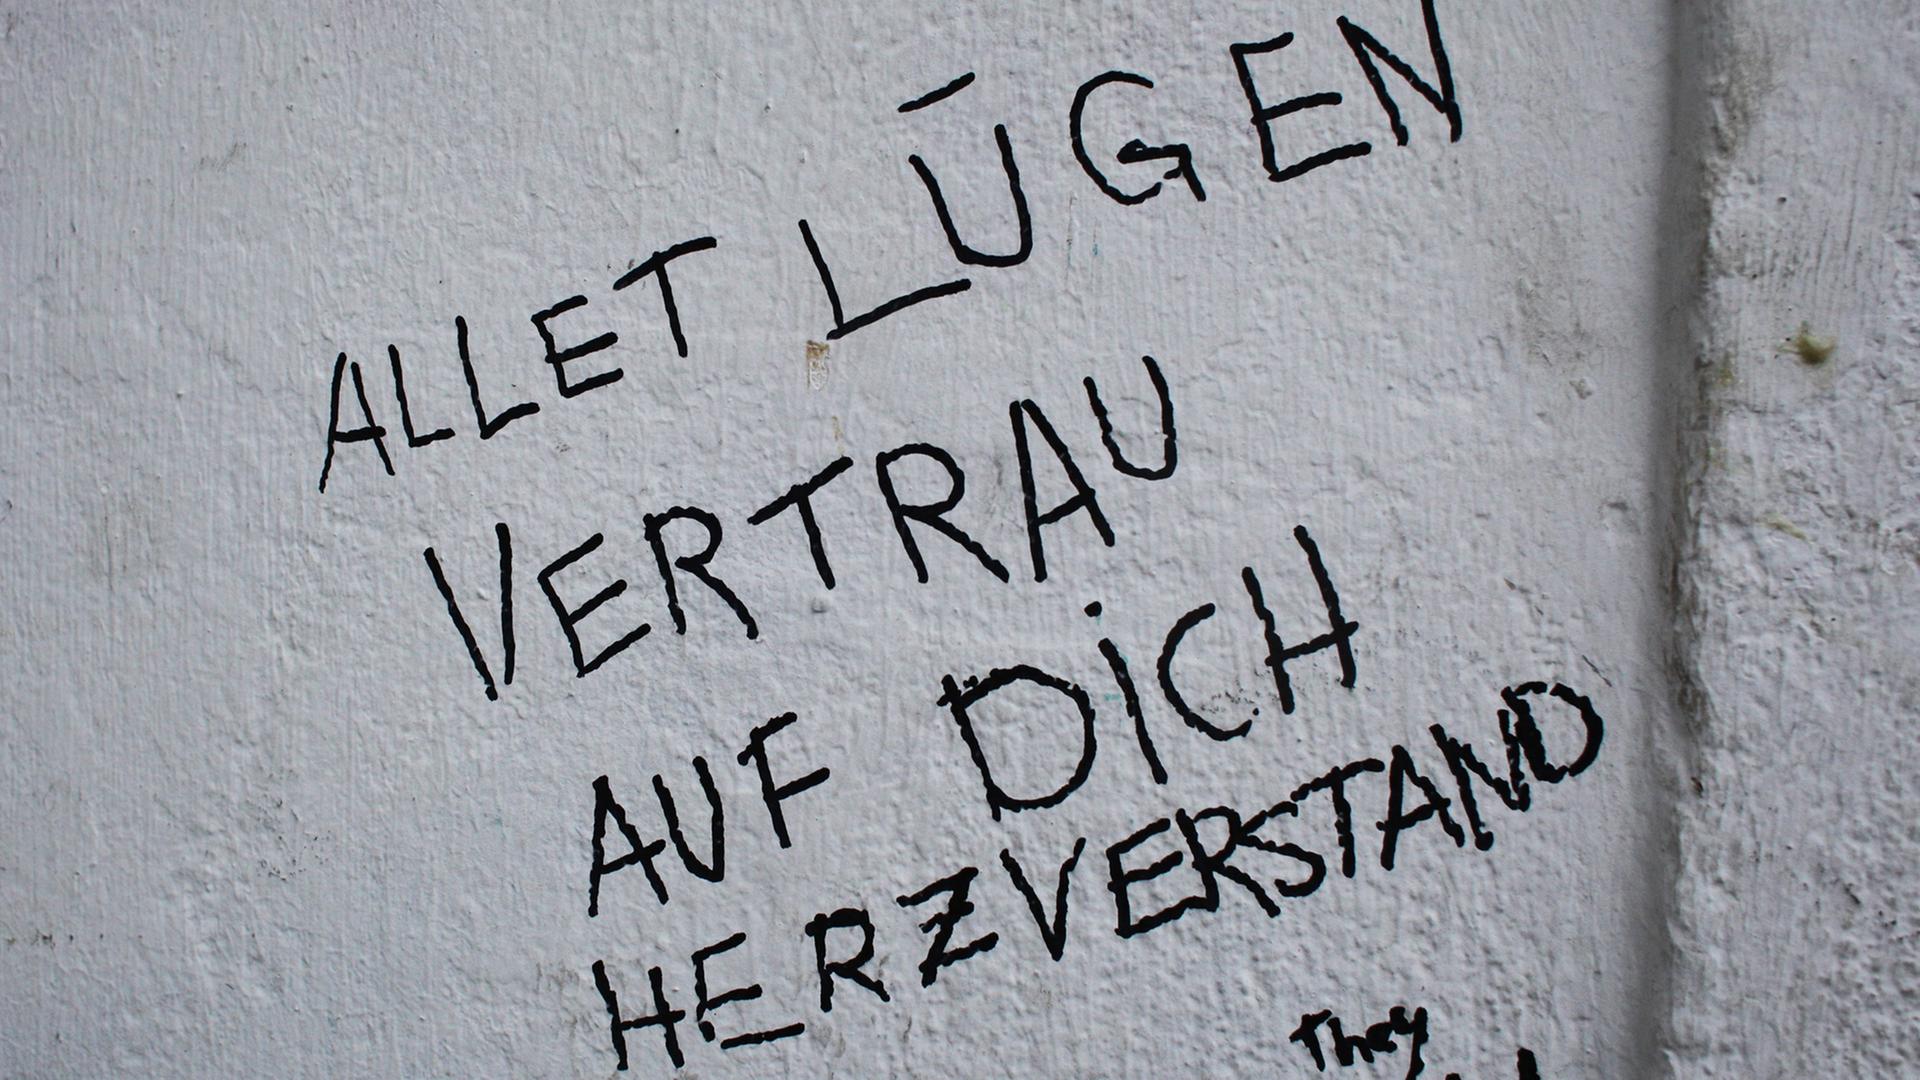 Die Worte "Allet Lügen vertrau auf Dich Herzverstand" sind am 11.12.2017 in Berlin mit Filzstift auf eine Hauswand geschrieben.